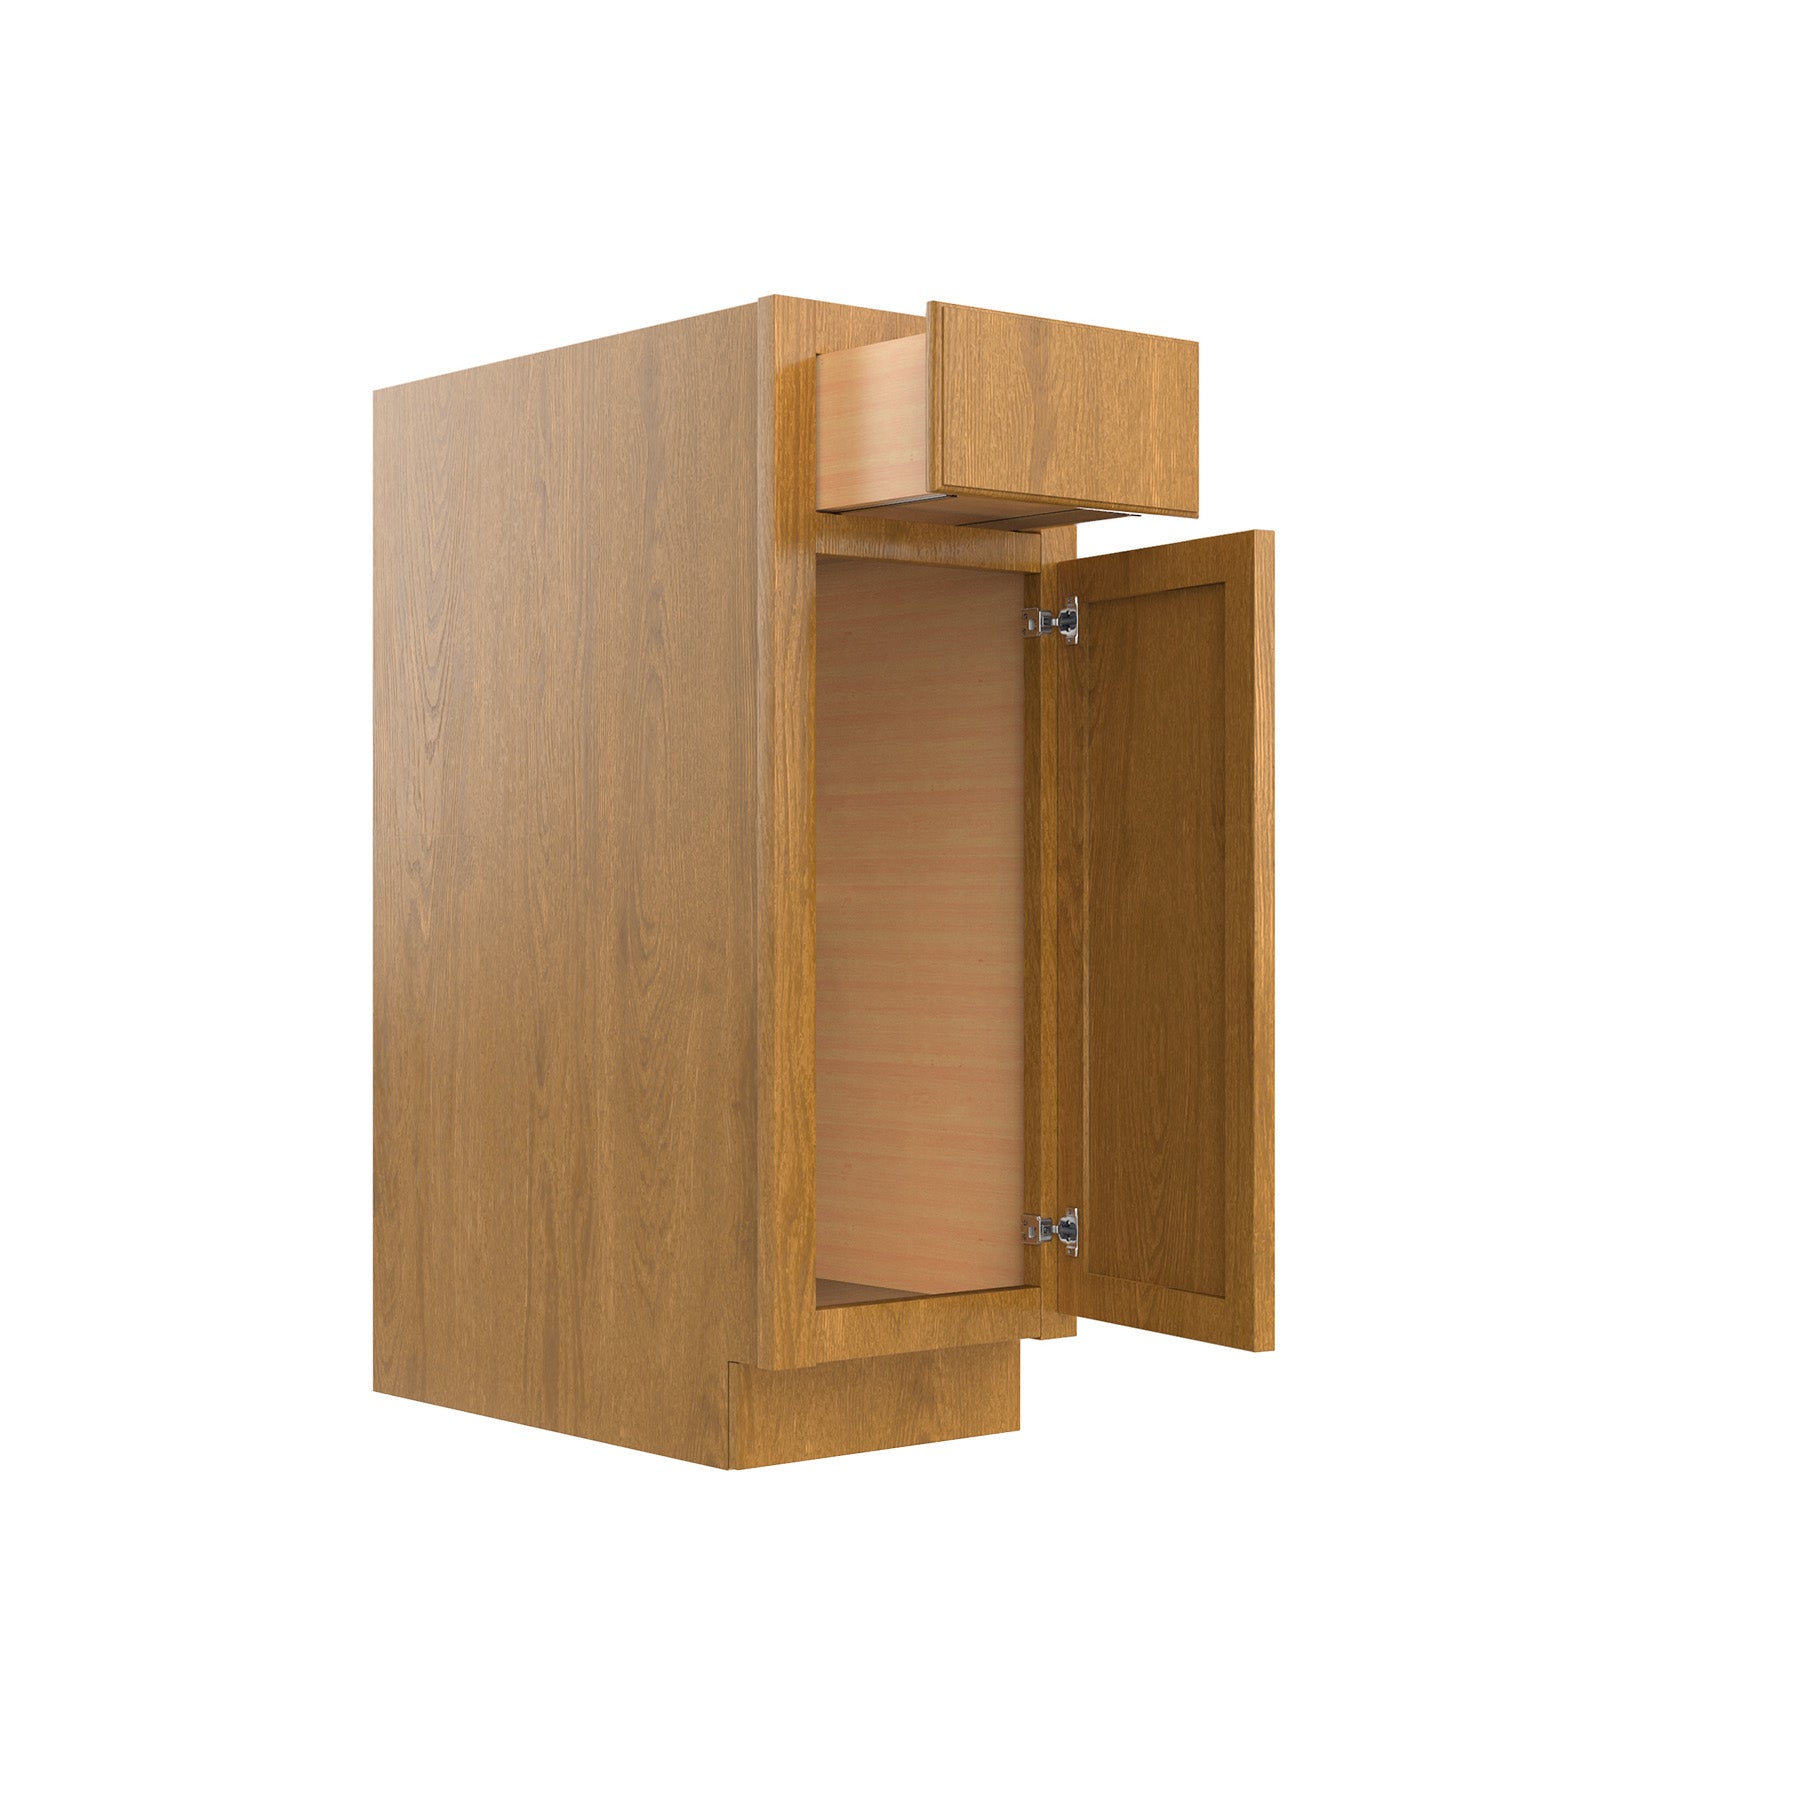 RTA - Country Oak - Single Door Base Cabinet | 12"W x 34.5"H x 24"D